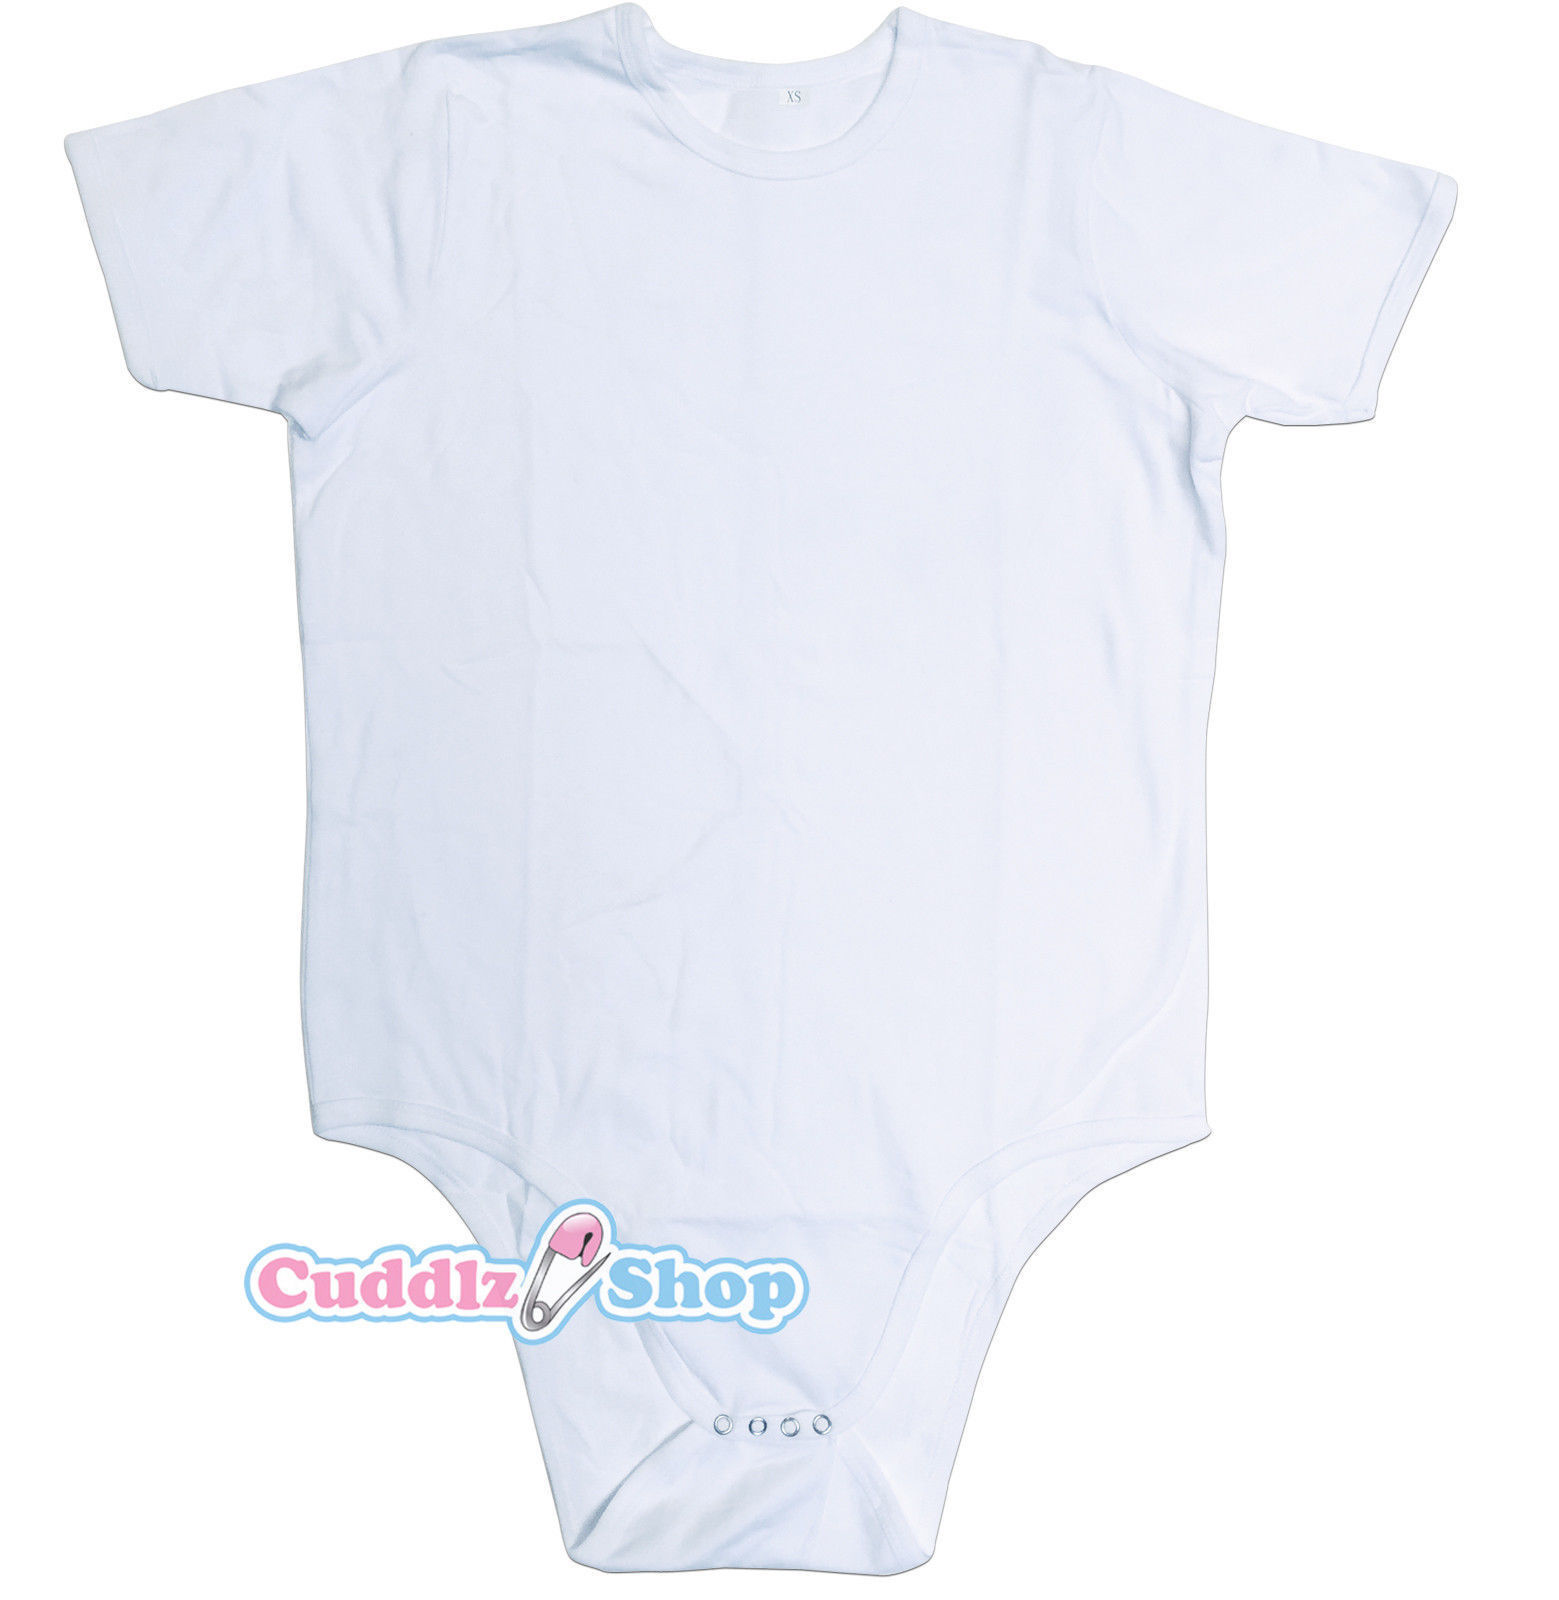 Cuddlz Short White Cotton Adult Baby Grow Romper ABDL Body Suit Onesie